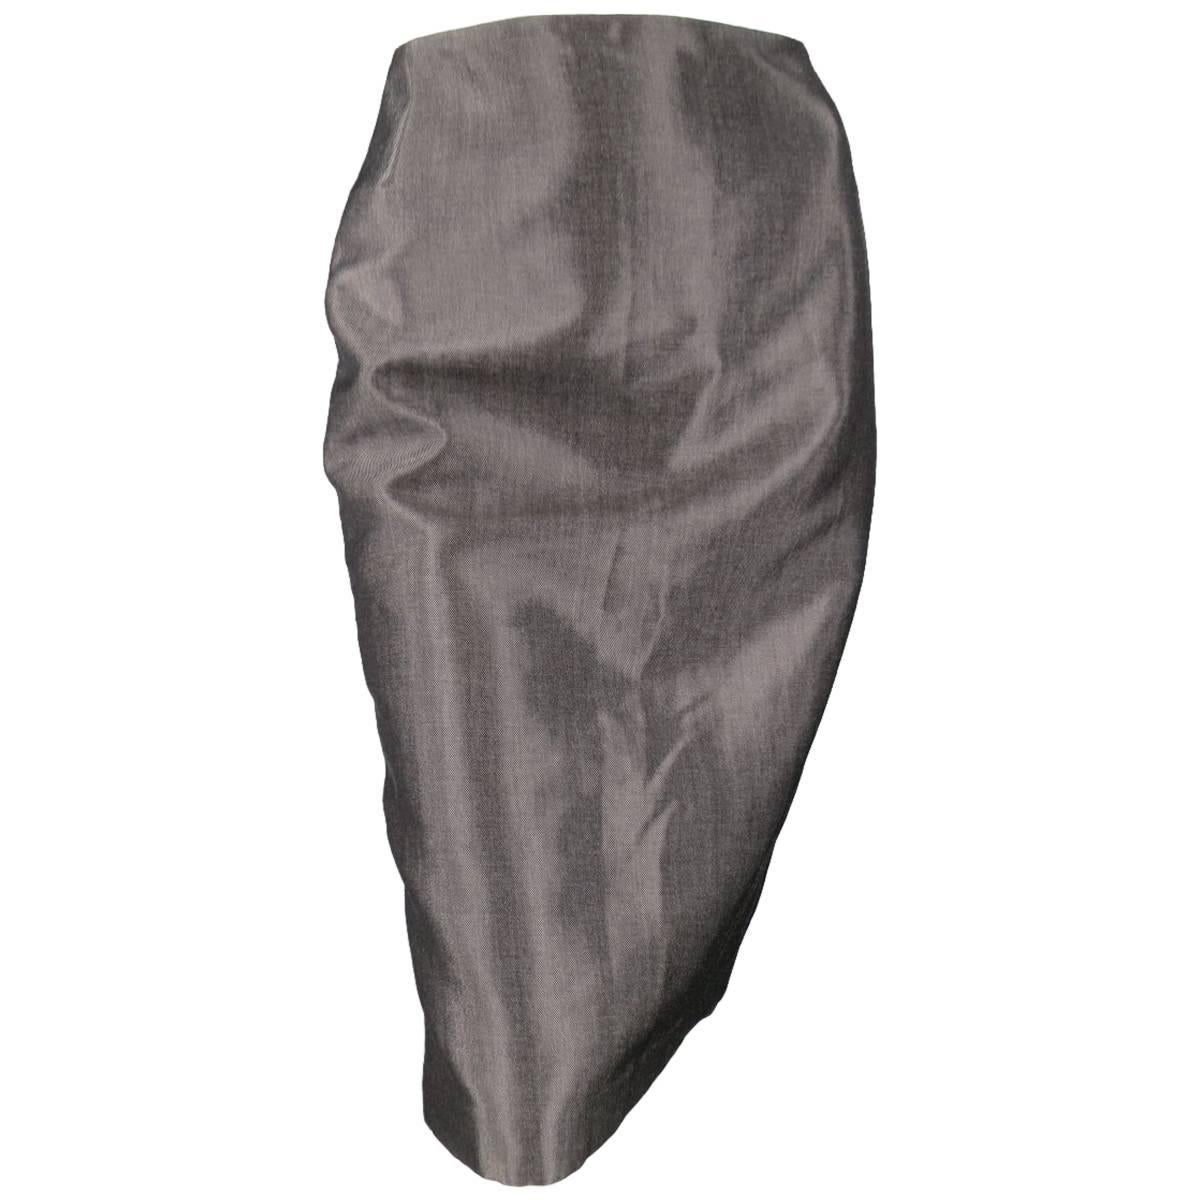 RALPH LAUREN COLLECTION Pencil Skirt Size 4 Metallic Grey Wool Blend